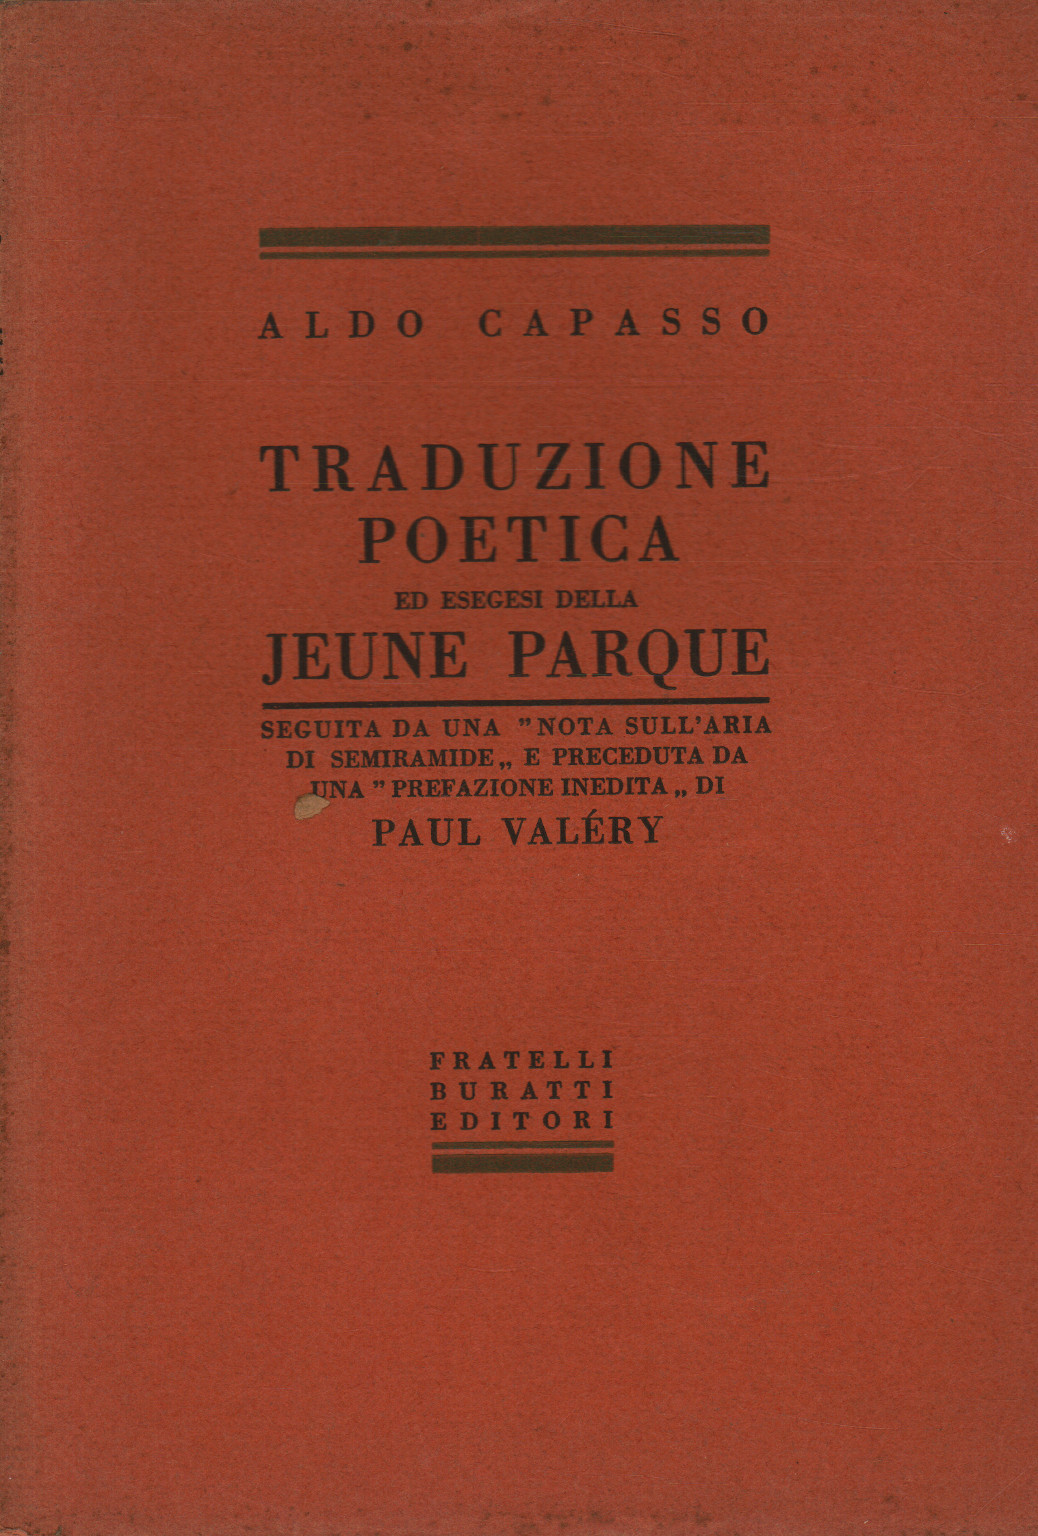 Übersetzung und exegese der "Jeune Parque" , s.zu.